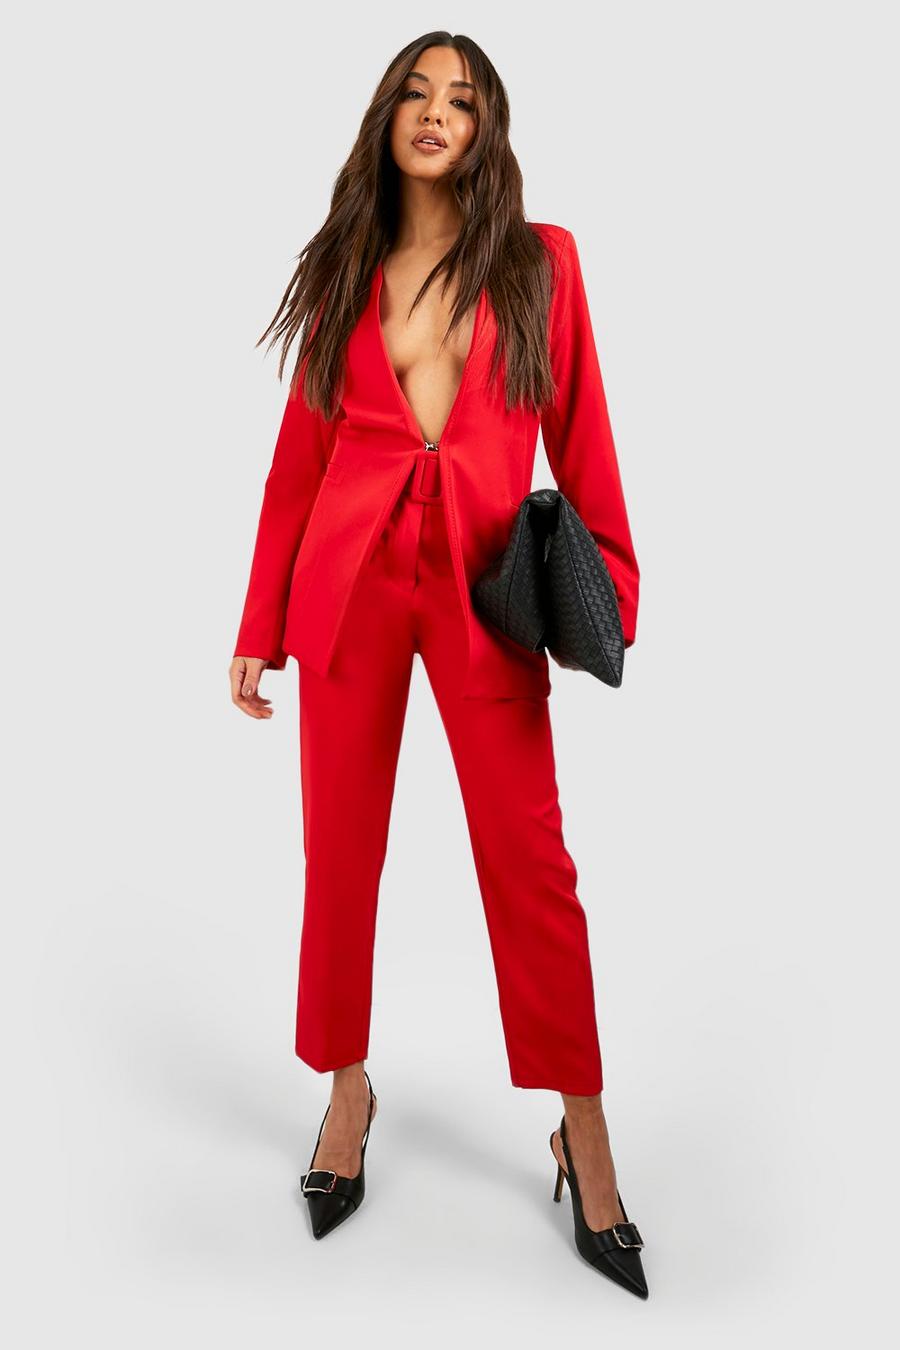 Three Piece Red Solid Suit Set For Women Blazer Wedding Guest Pantsuit  Bridal Suit Set Blazer Vest Pants Office Formal Outfit - AliExpress